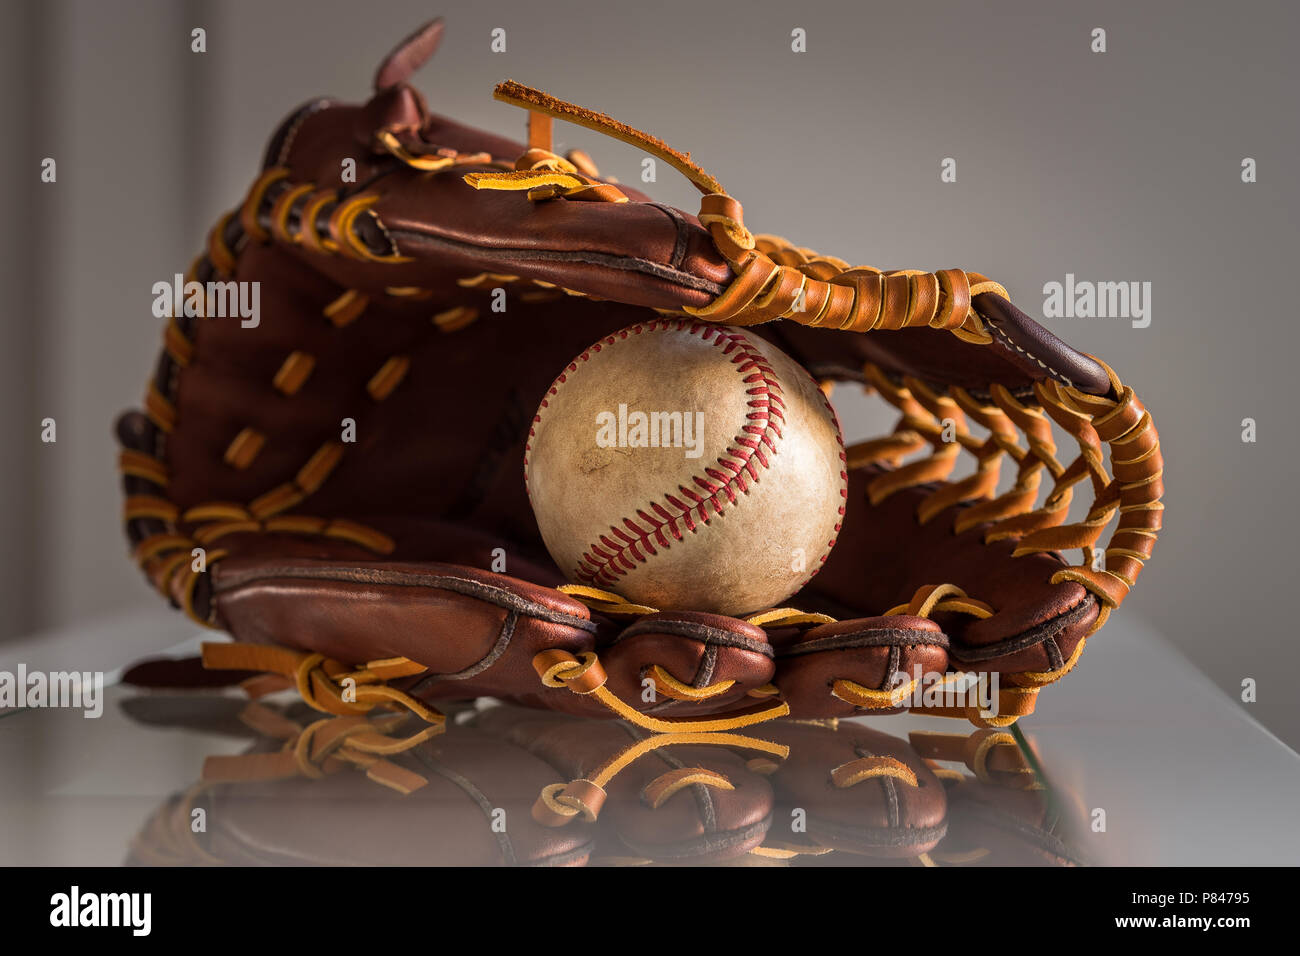 Close-up de una pelota de béisbol usado dentro de un guante de béisbol, cuero marrón sobre la llanura, fondo gris. Foto de stock